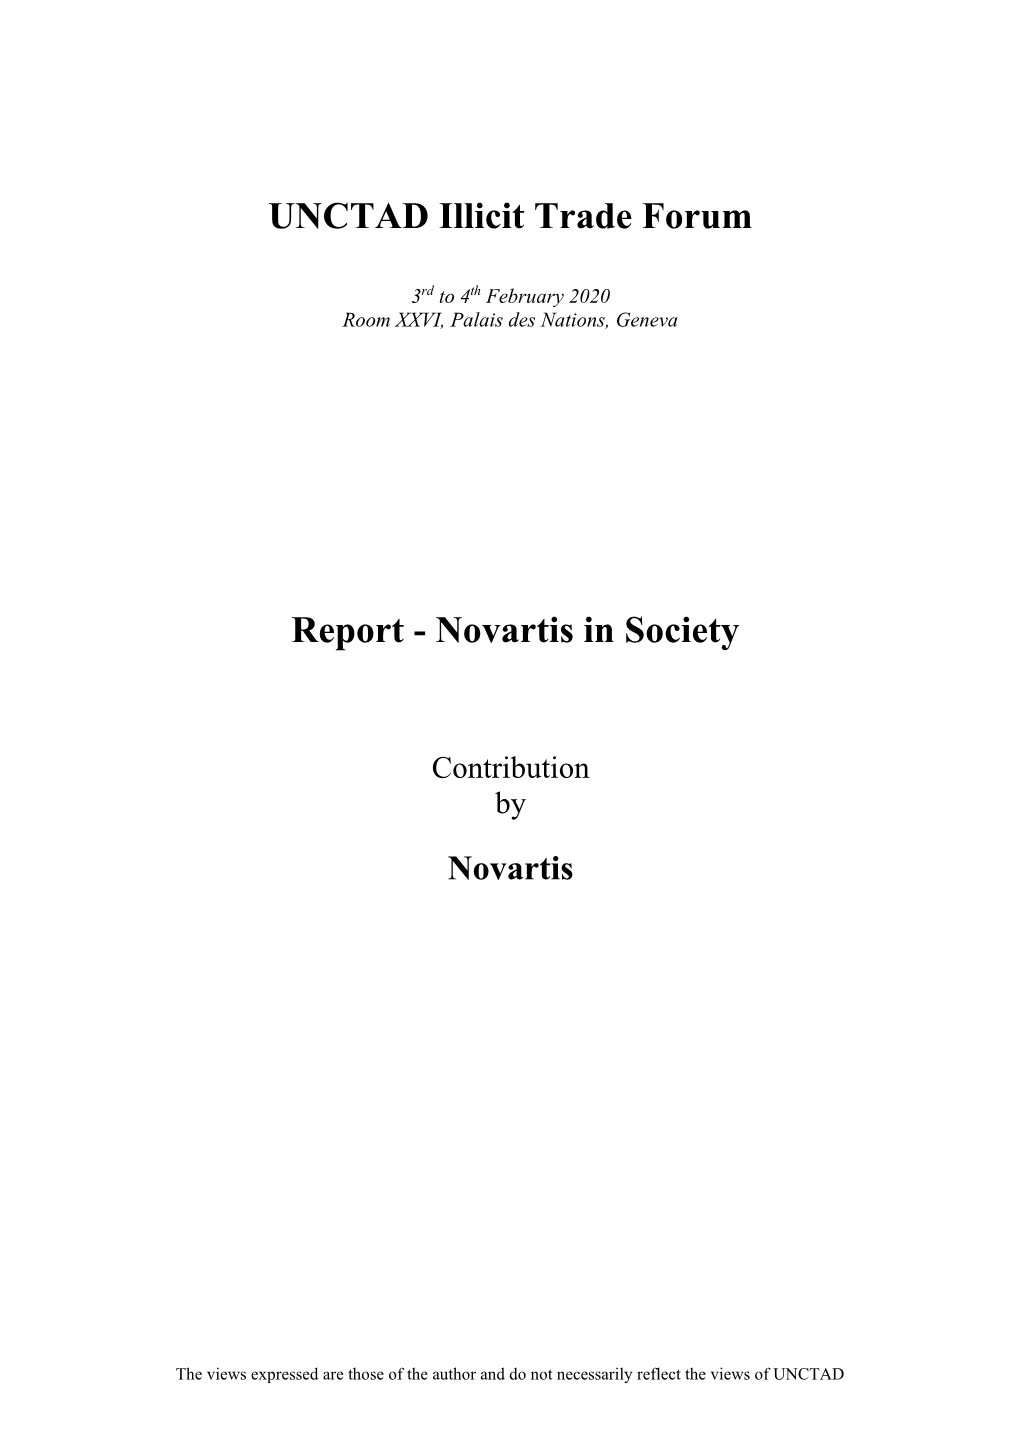 Novartis in Society Report 2018